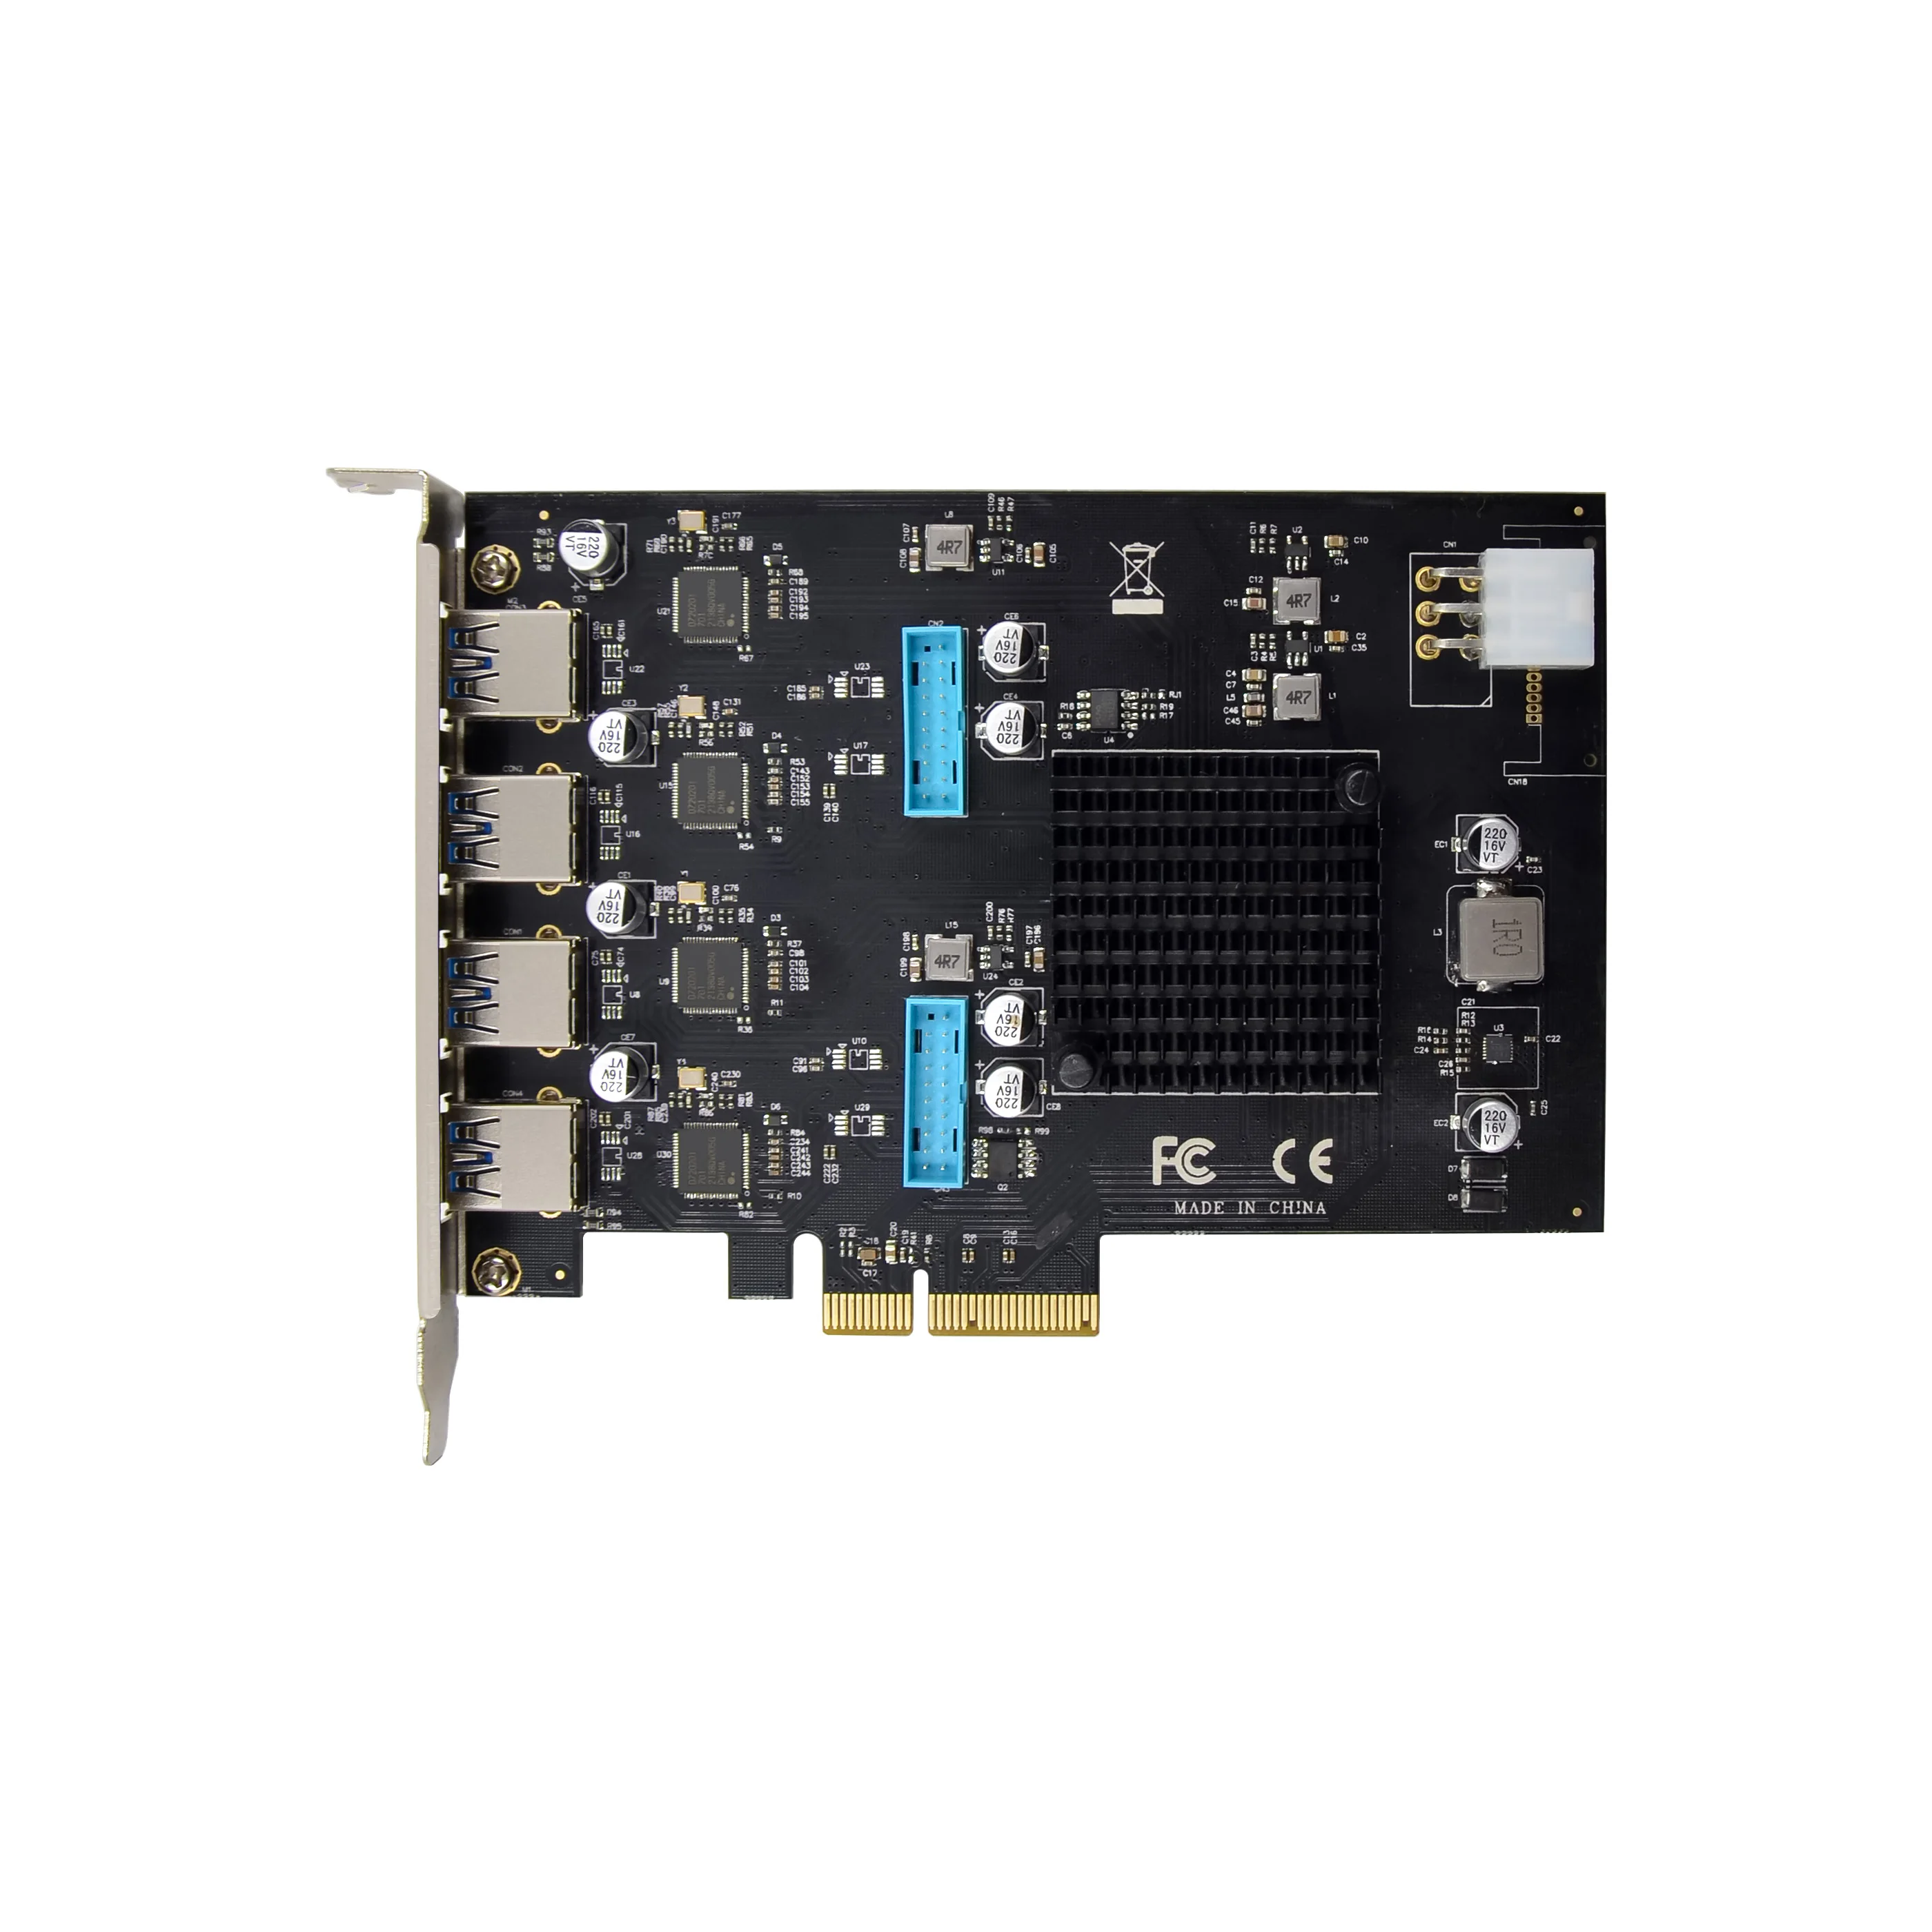 Прямая продажа с фабрики PCI-E X4 Gen2 встроенная карта внешняя карта 20 г/локон PCIe 4CH 8 Порт USB 3,0 Плата расширения